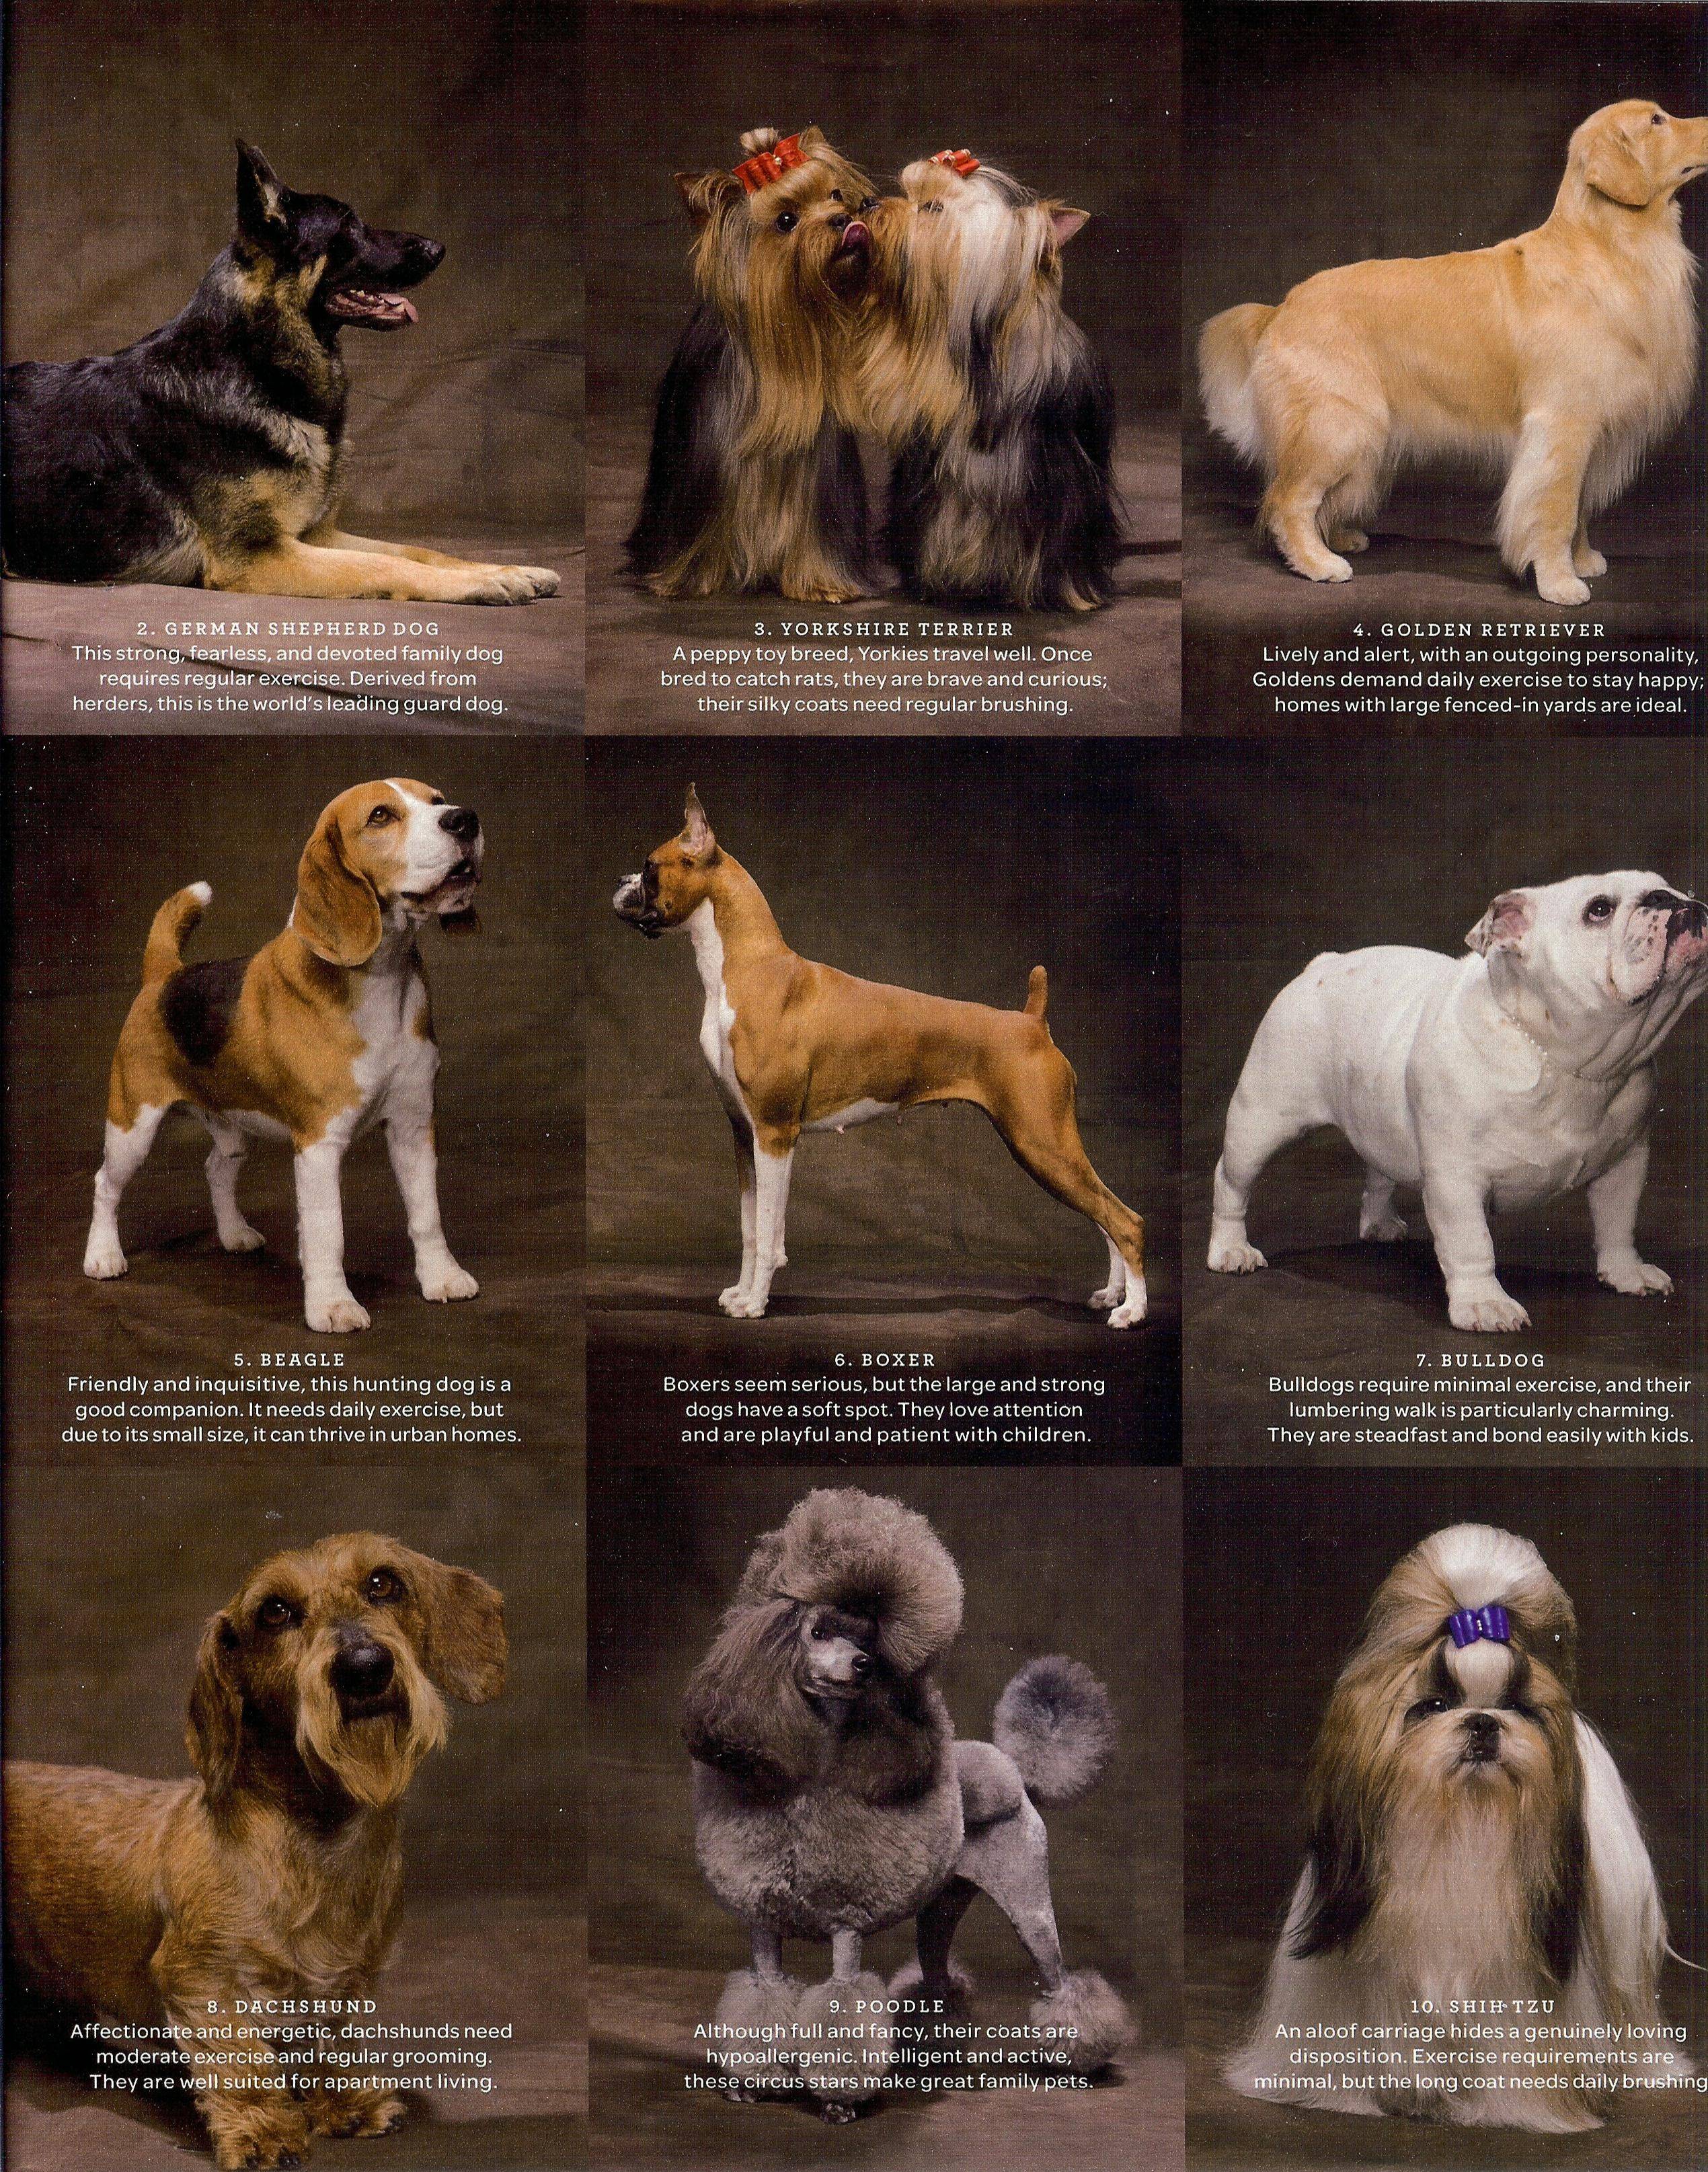 Большие породы собак - названия и фото (каталог)